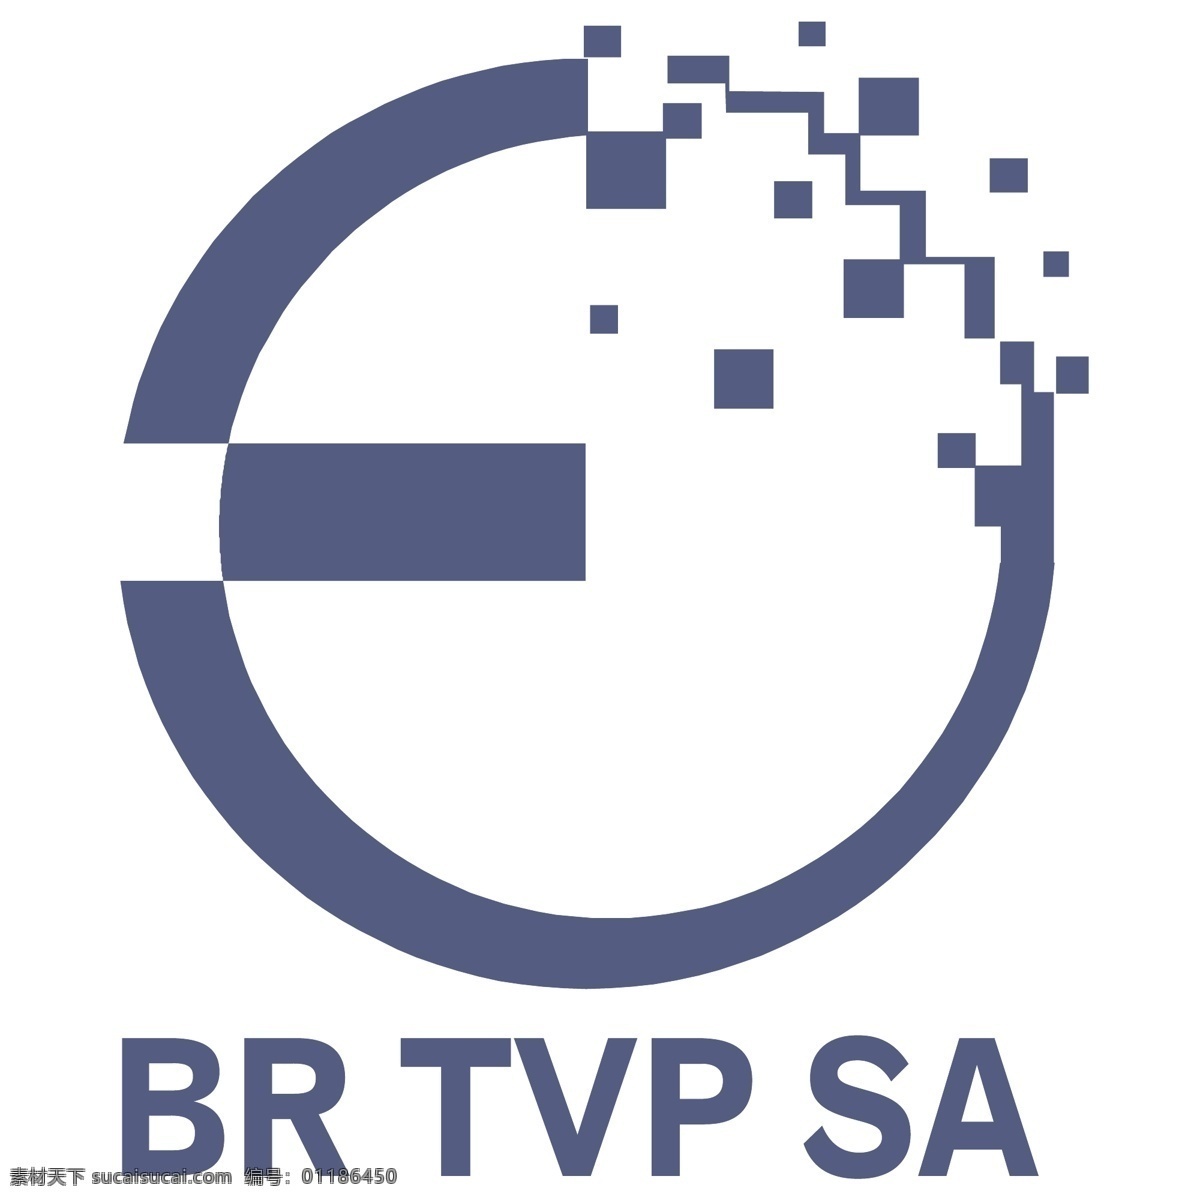 br tvp sa 矢量标志下载 免费矢量标识 商标 品牌标识 标识 矢量 免费 品牌 公司 白色